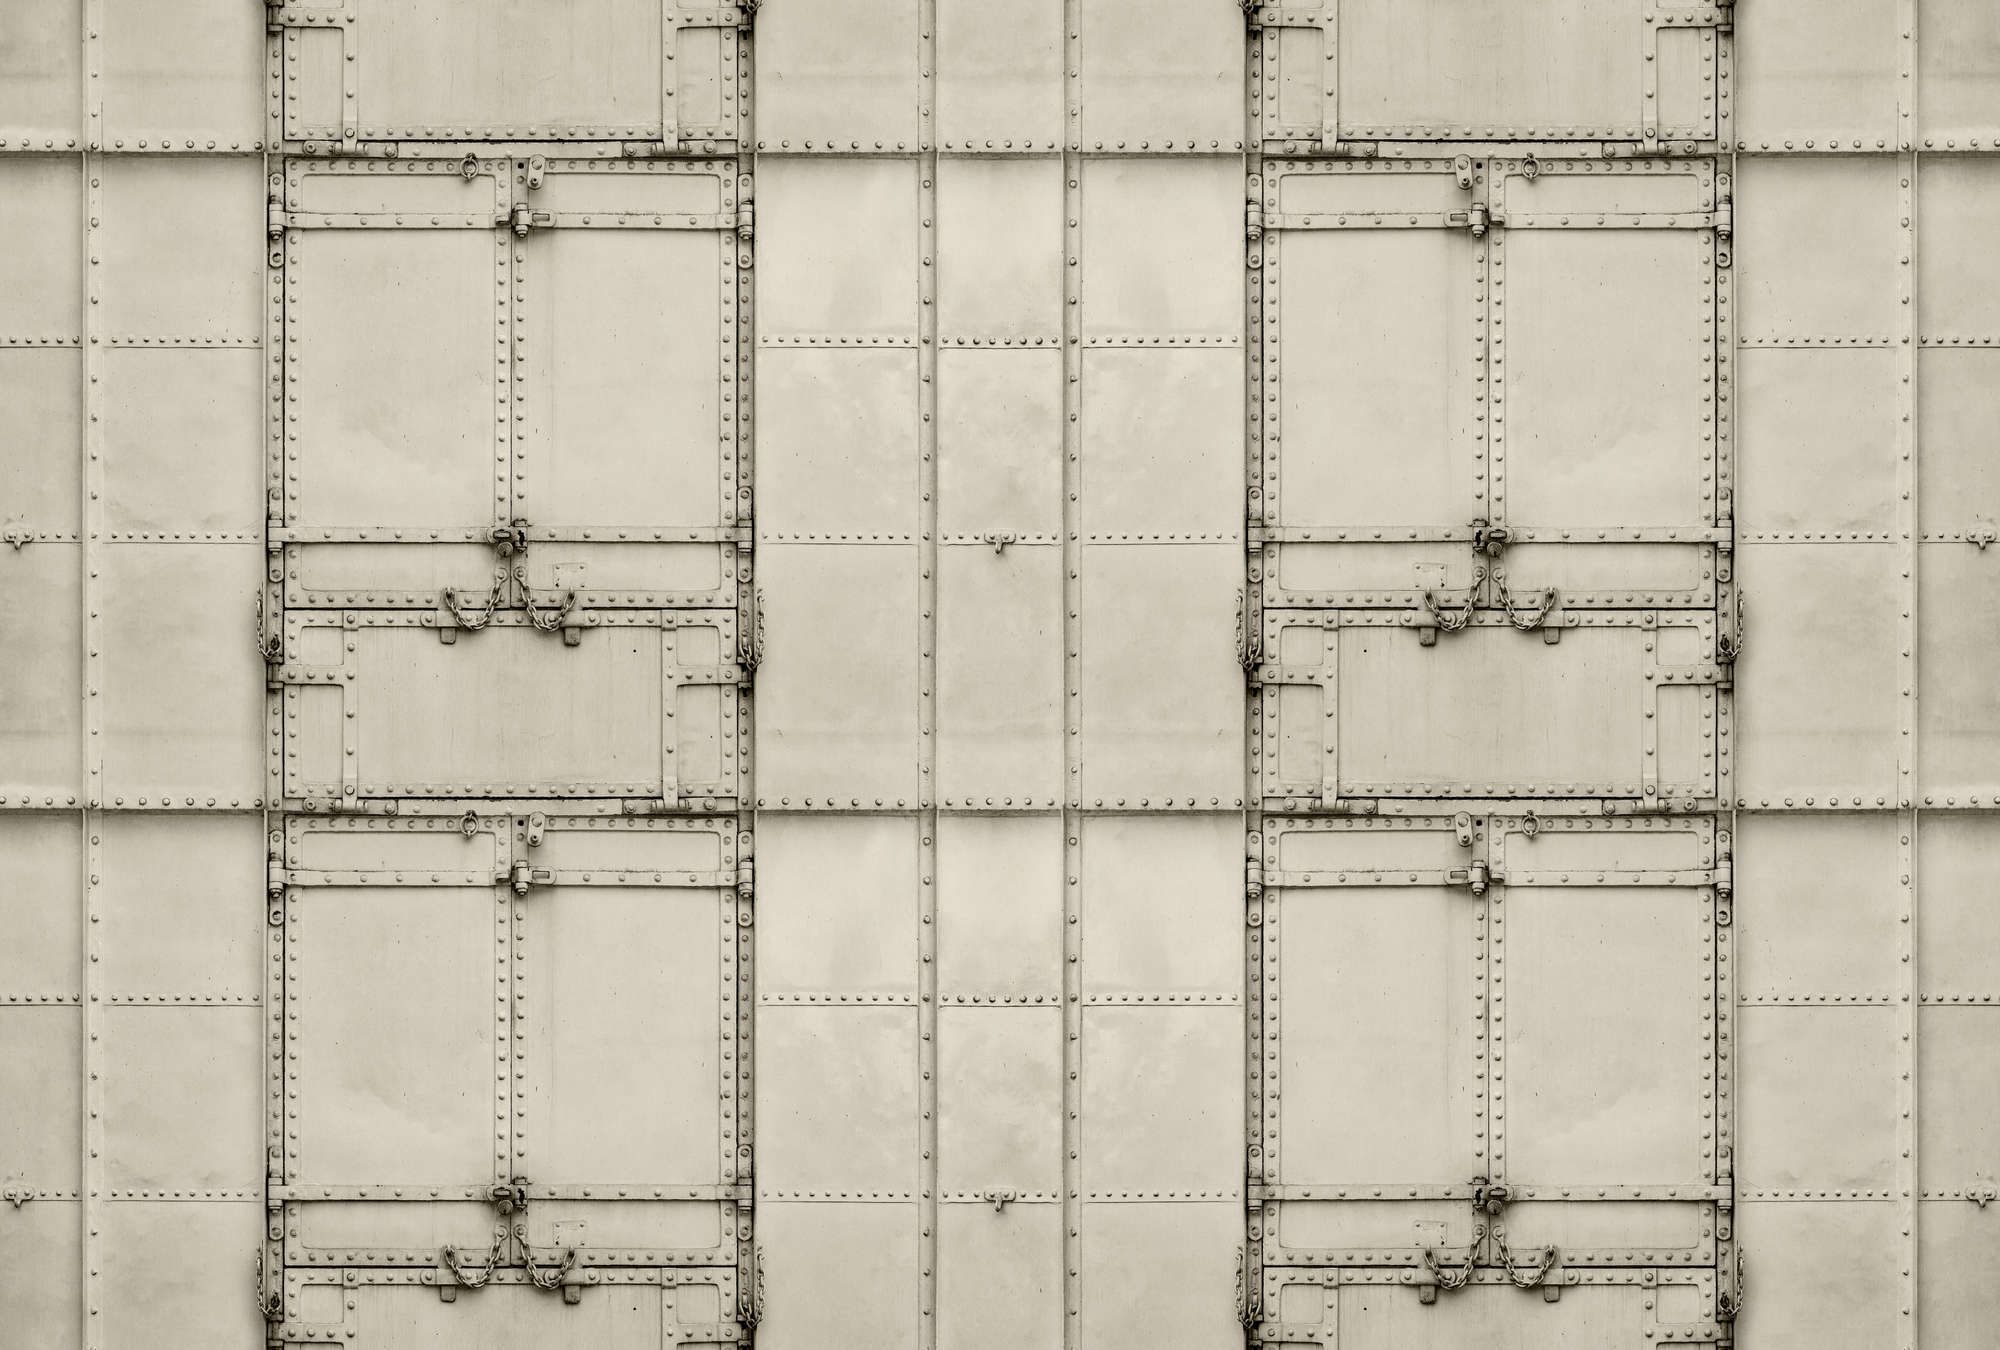             Fototapete »madurai« - Patchworkdesign mit Metallplatten mit Nieten & Ketten – Glattes, leicht perlmutt-schimmerndes Vlies
        